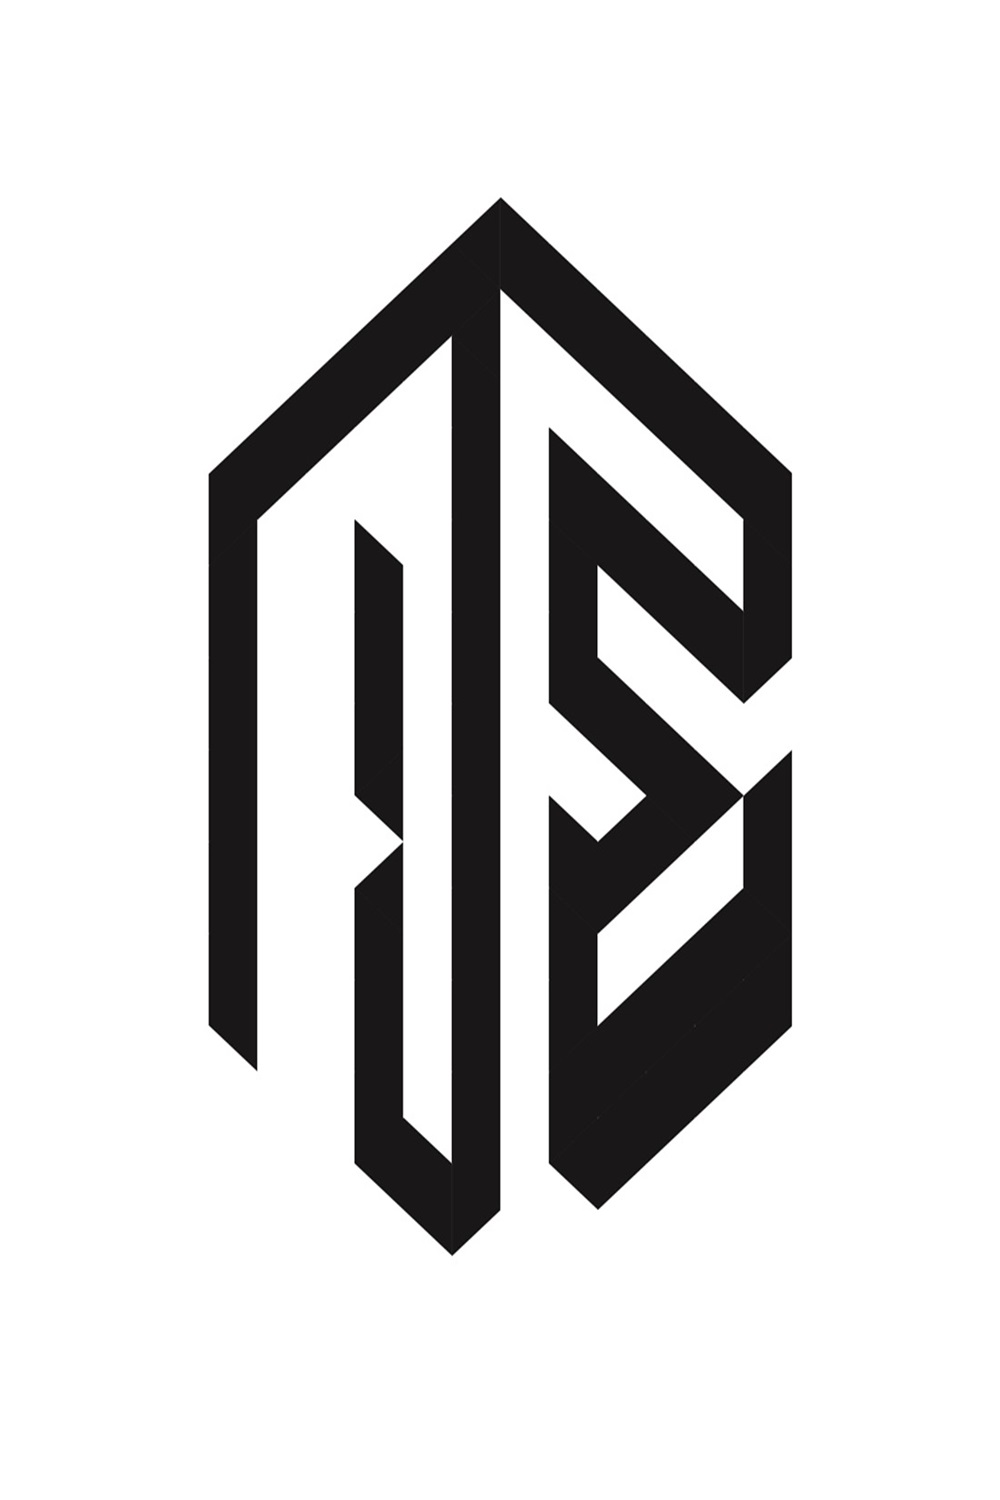 Polygon Logo pinterest preview image.